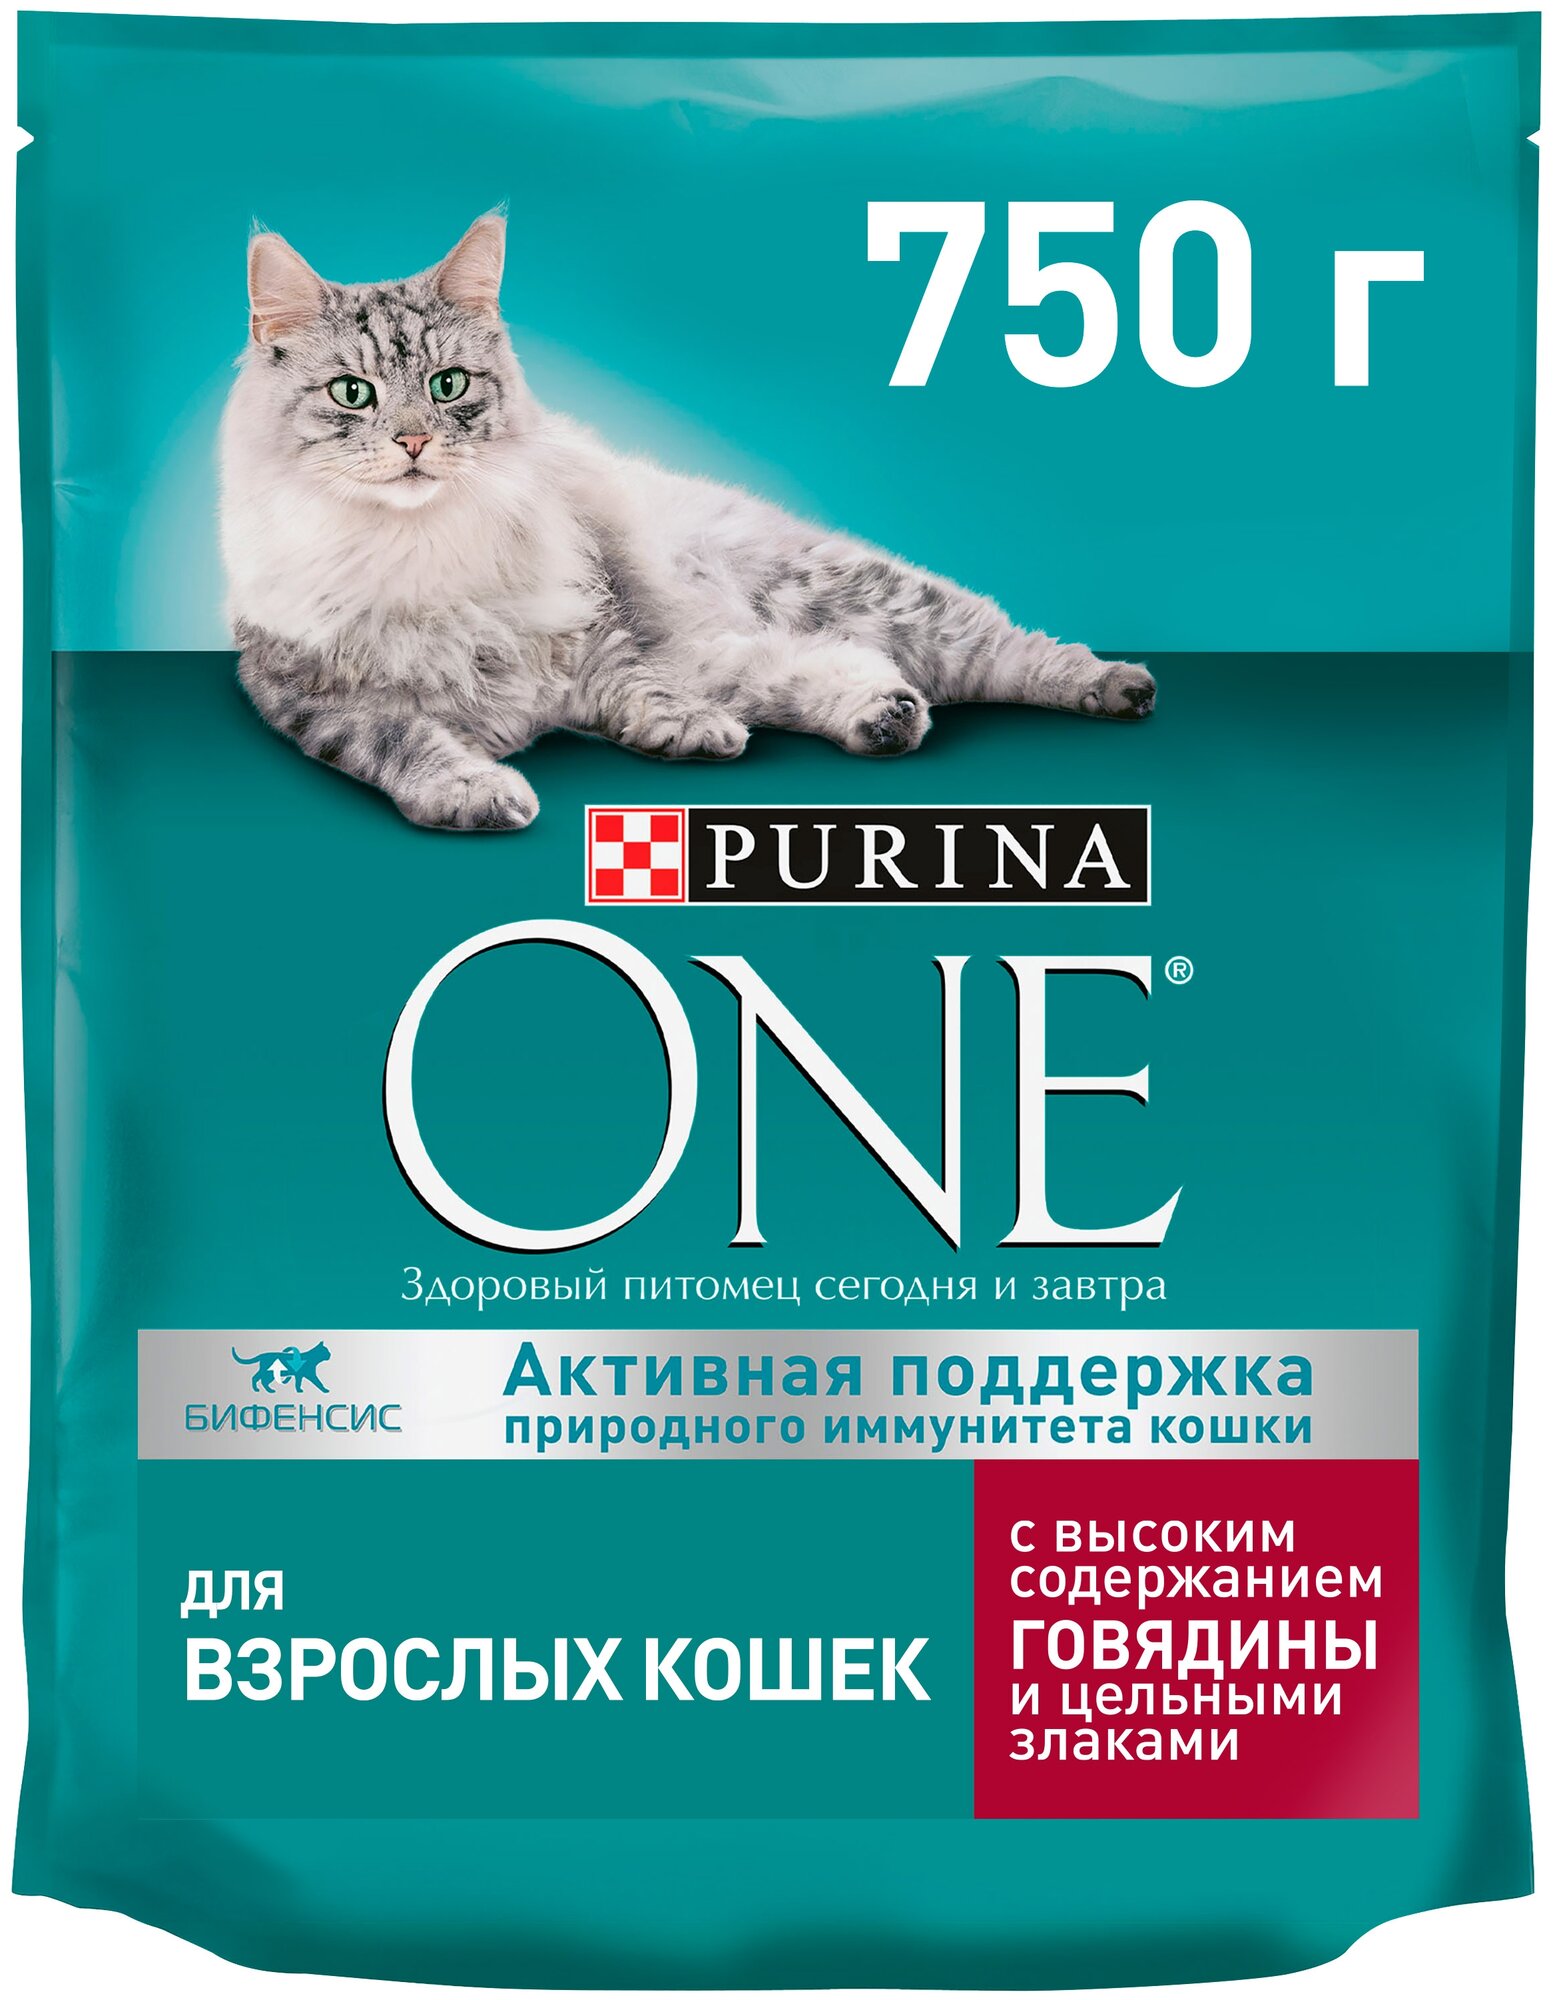 Сухой корм для кошек Purina ONE с высоким содержанием говядины и цельными злаками 750 г